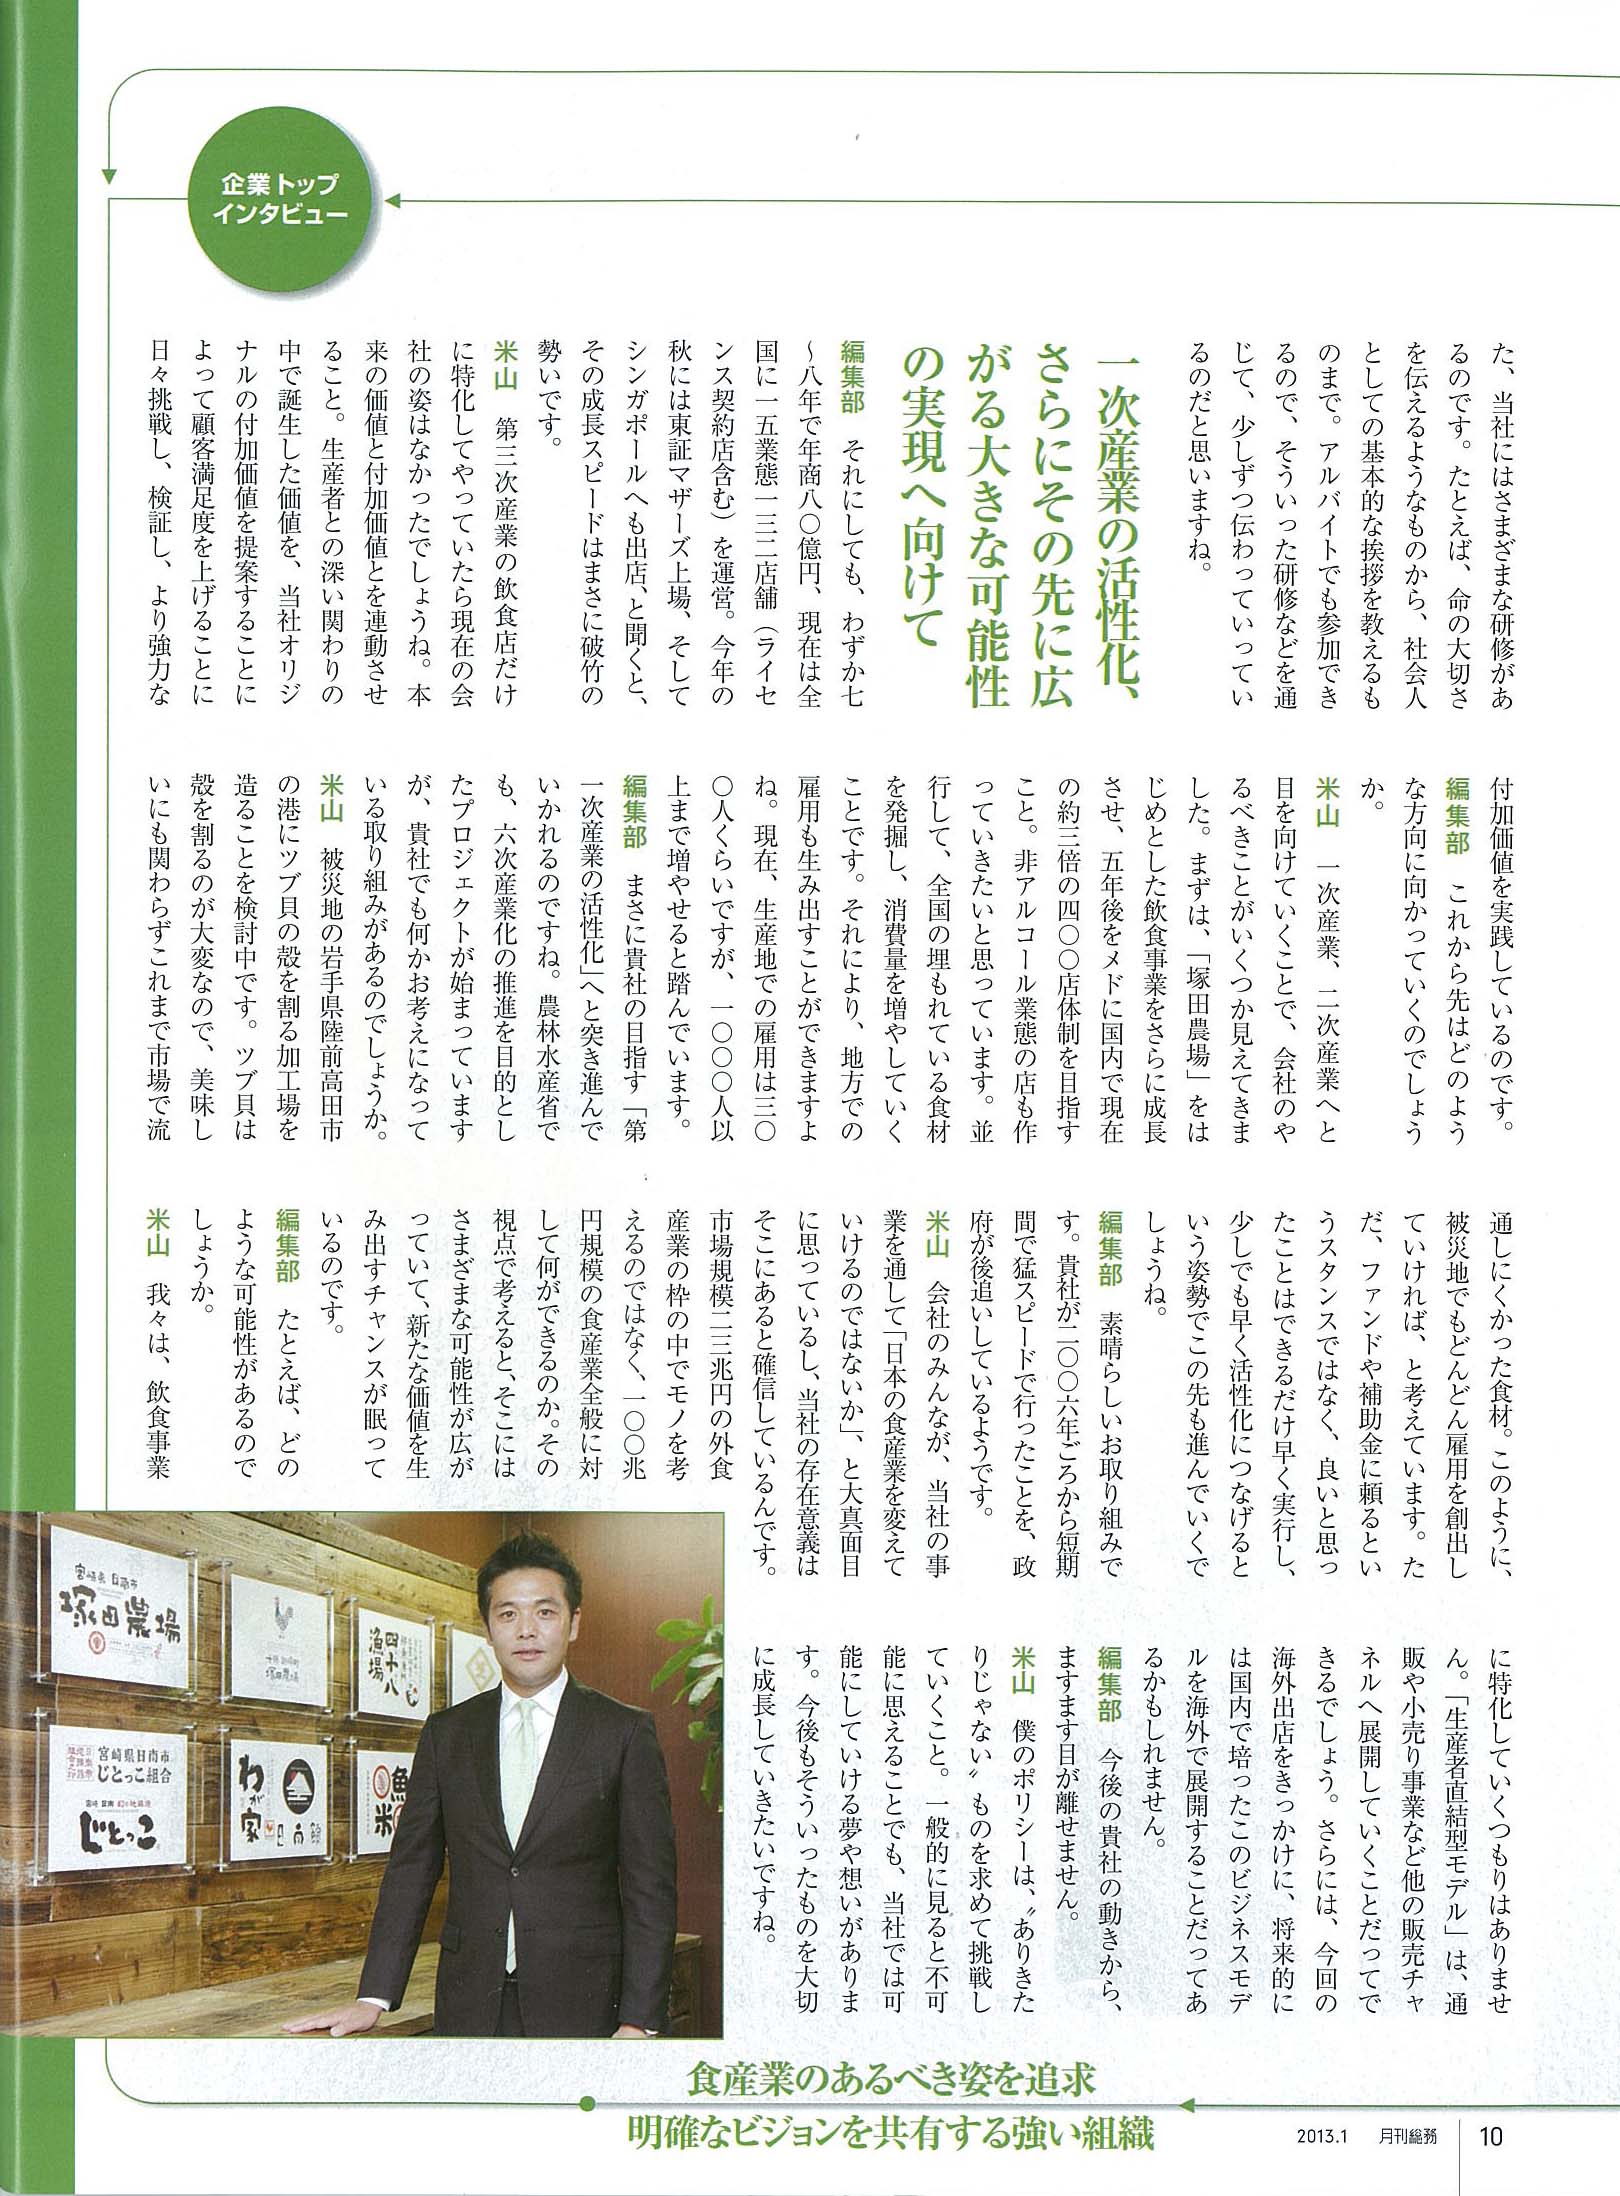 http://www.apcompany.jp/media/2012/12/07/img-Z07122304.jpg